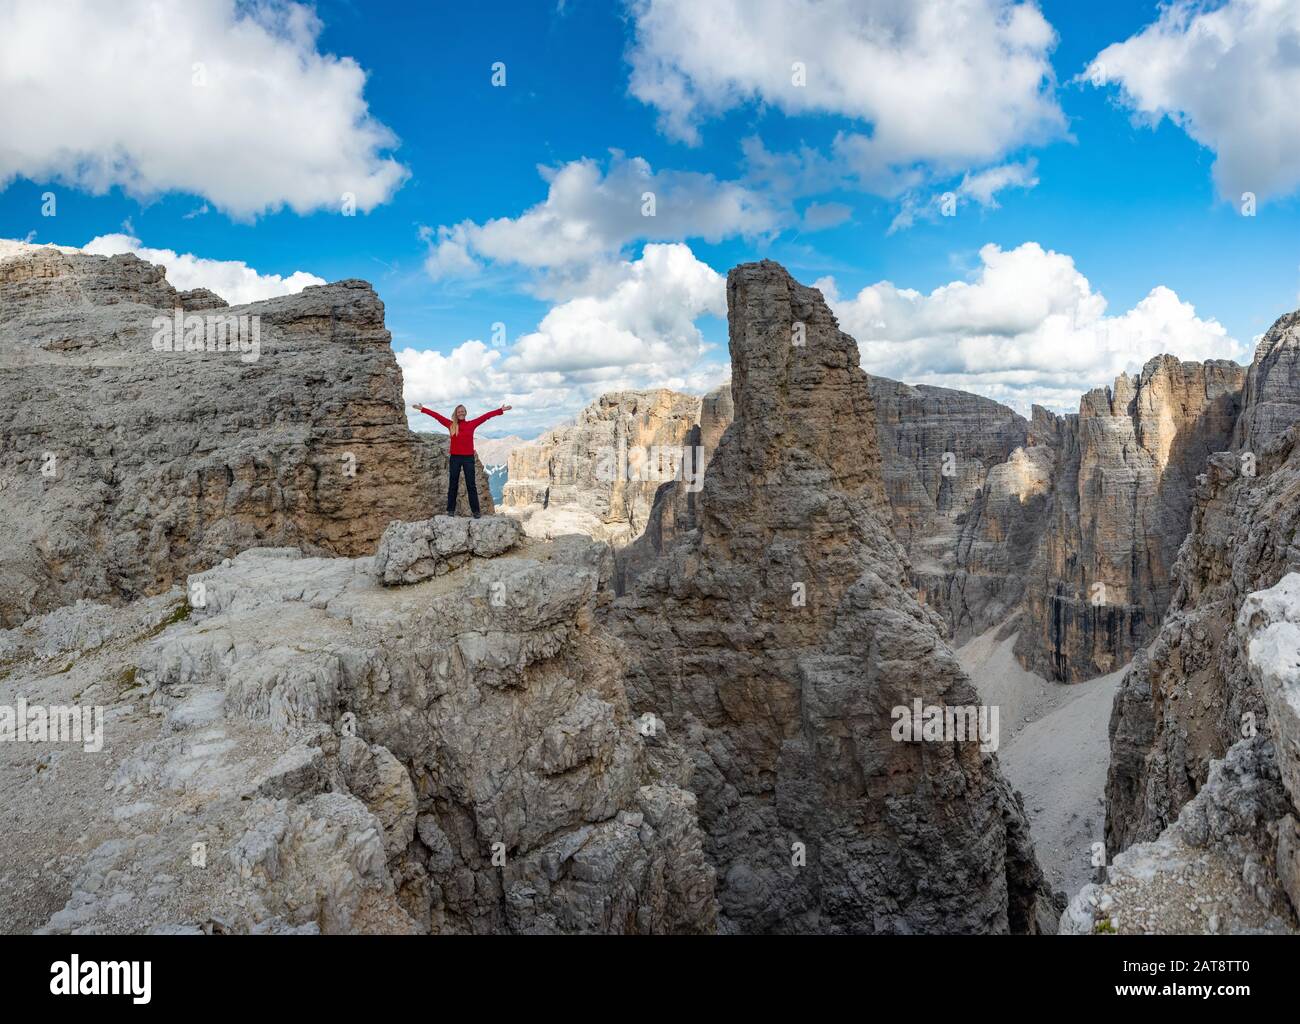 Active escursionista escursionismo, godendo la vista guardando, Dolomiti paesaggio. Viaggio sport concetto di stile di vita Foto Stock